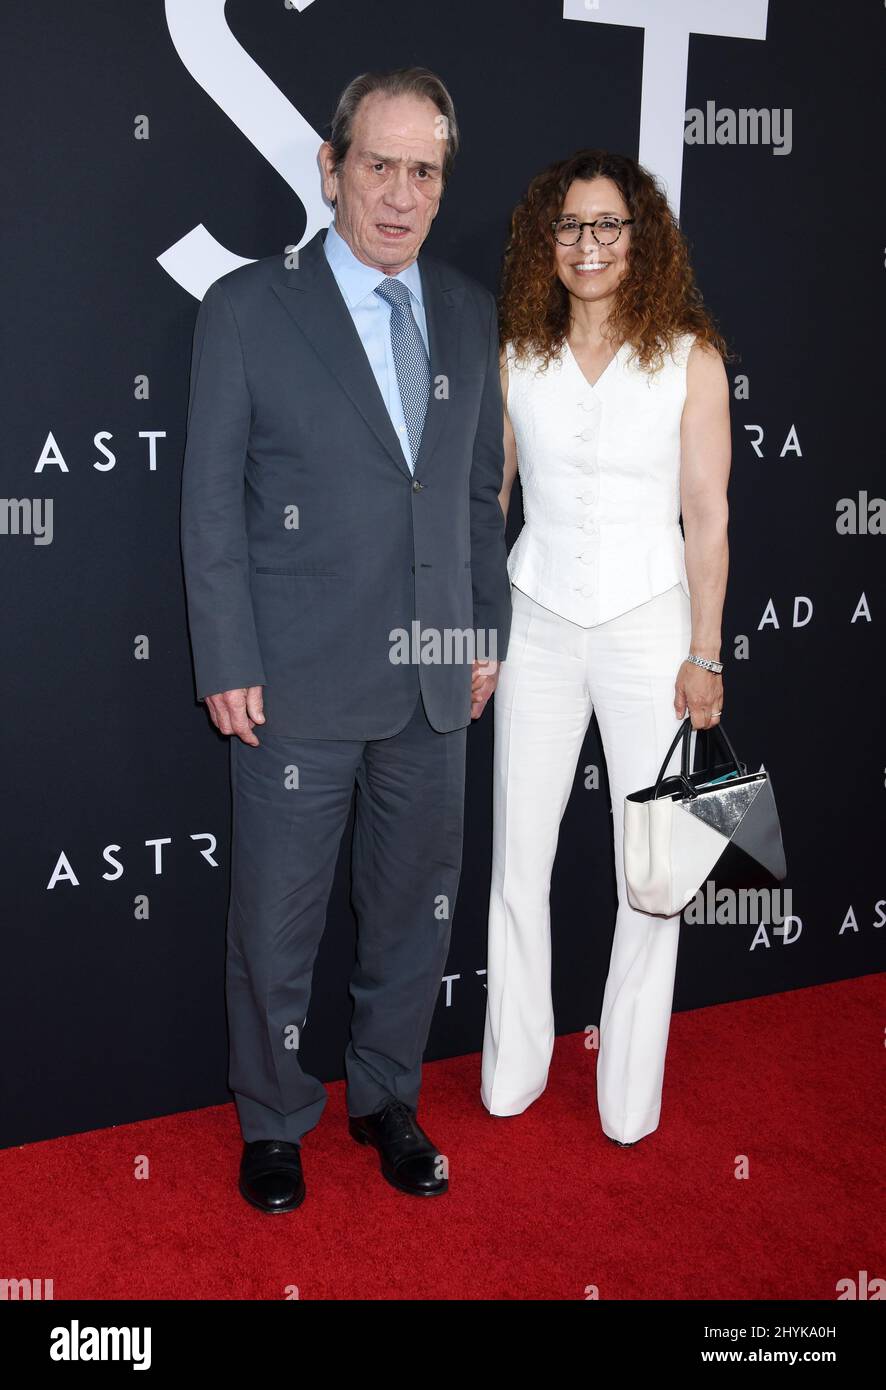 Tommy Lee Jones et Dawn Laurel-Jones lors de la projection spéciale « ad Astra » tenue au ArcLight Cinemas Cinerama Dome le 18 septembre 2019 à Hollywood, Los Angeles. Banque D'Images